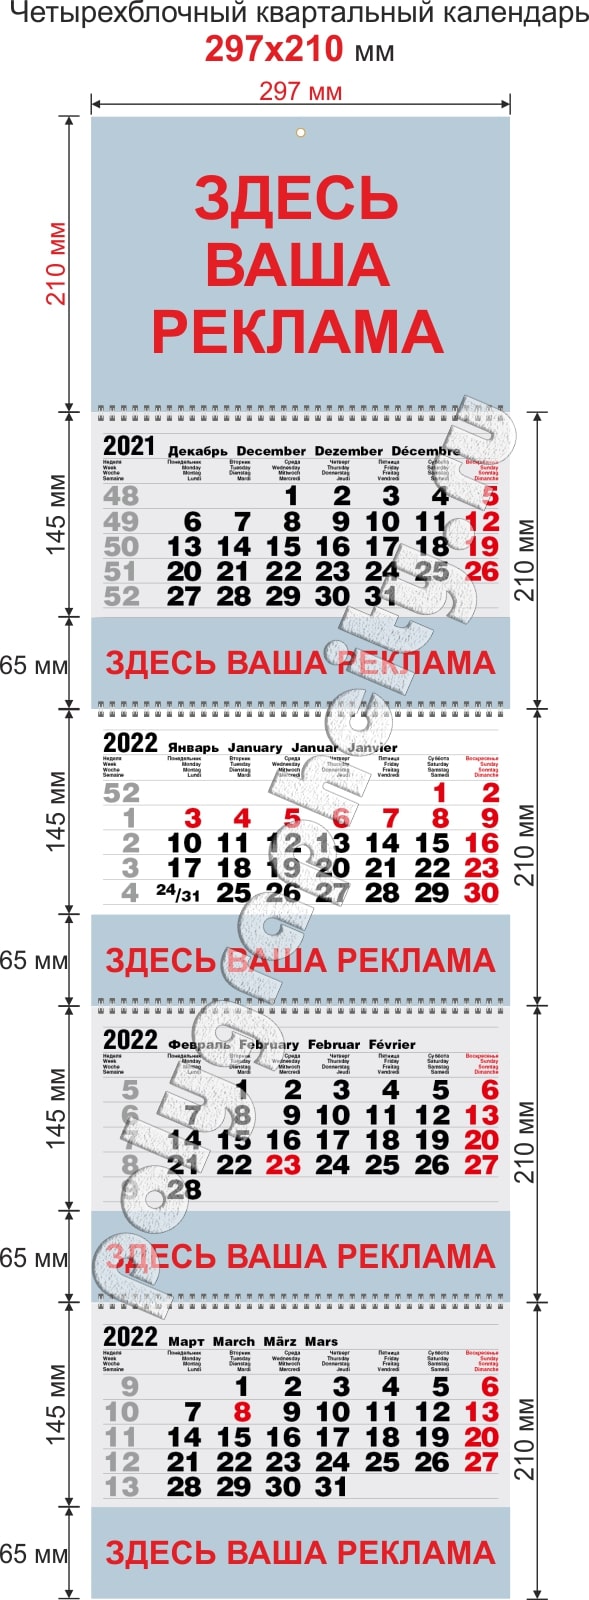 Параметры изготовления квартального календаря четырехблочного 297х210 мм